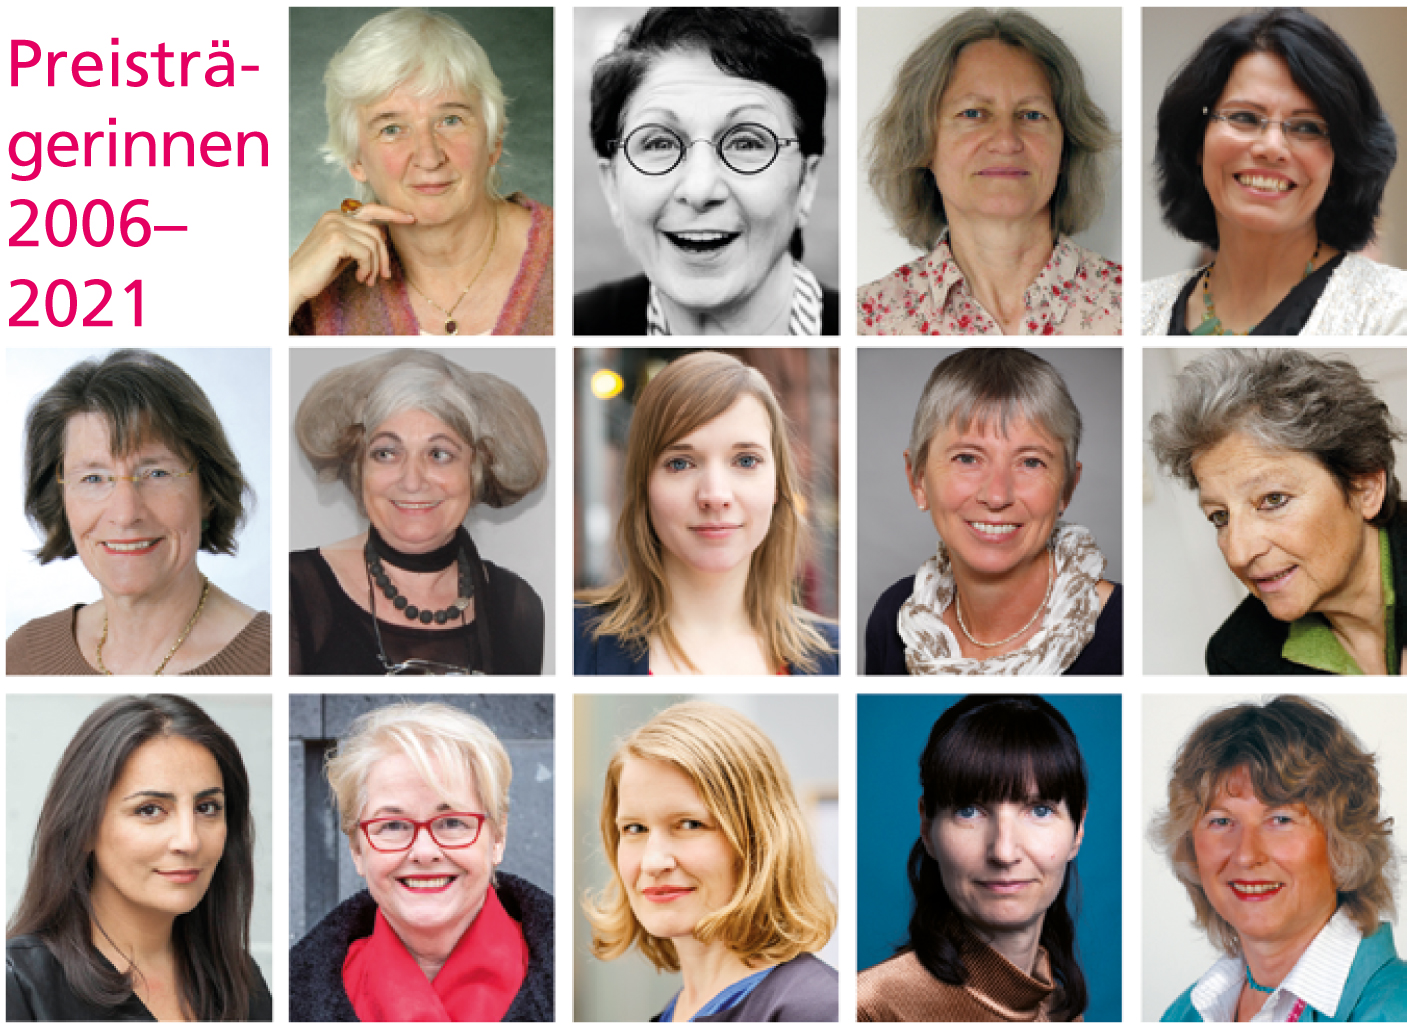 Preisträgerinnen der Stiftung Aufmüpfige Frauen von 2006 bis 2021